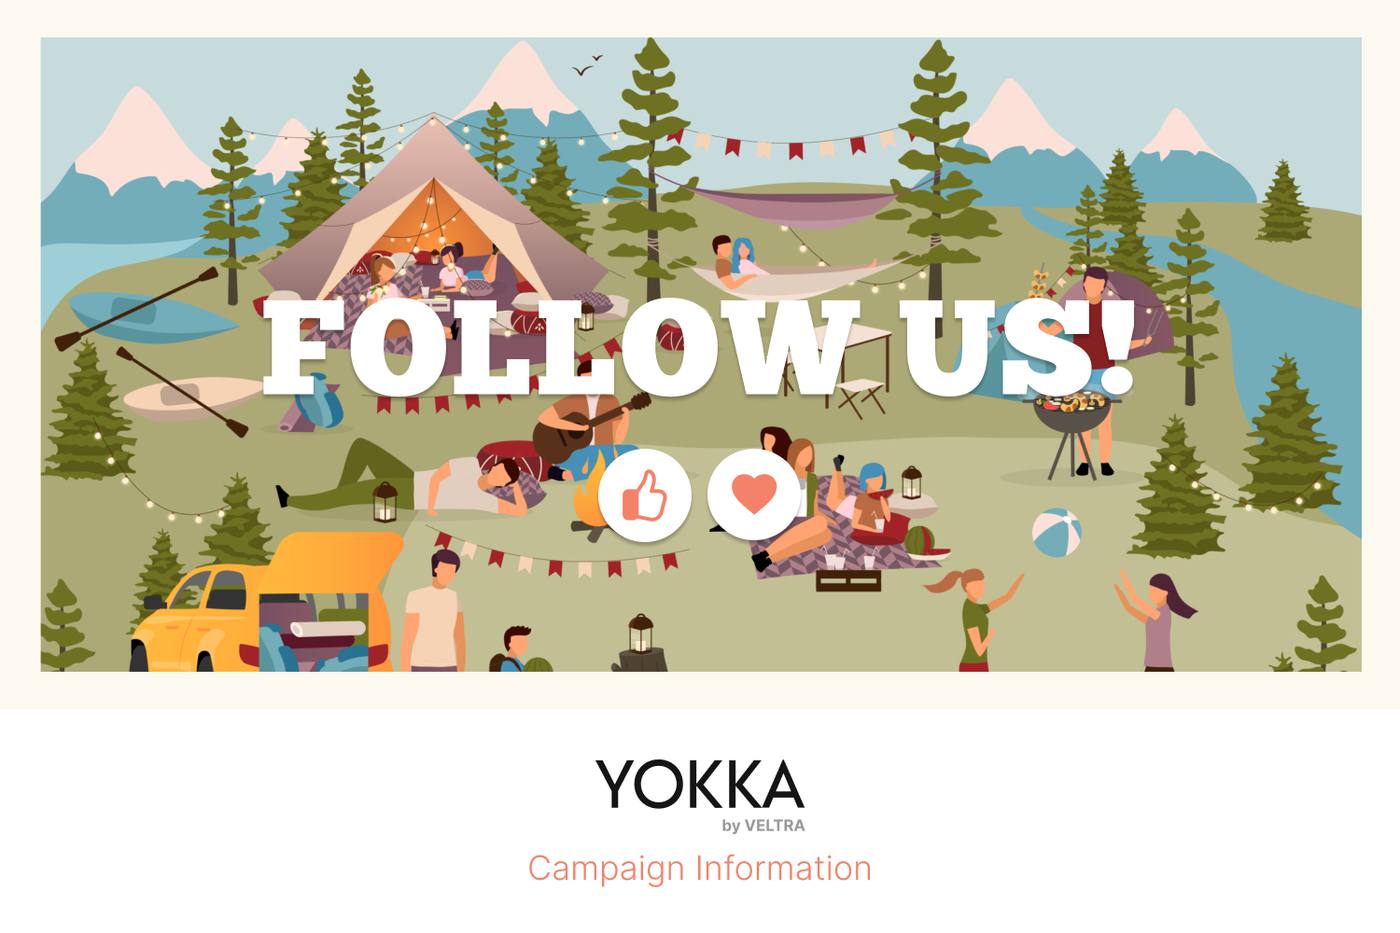 (終了しました)【11月4日締め切り】YOKKAキャンペーンに参加してみよっか！Twitterにて実施中♪ image